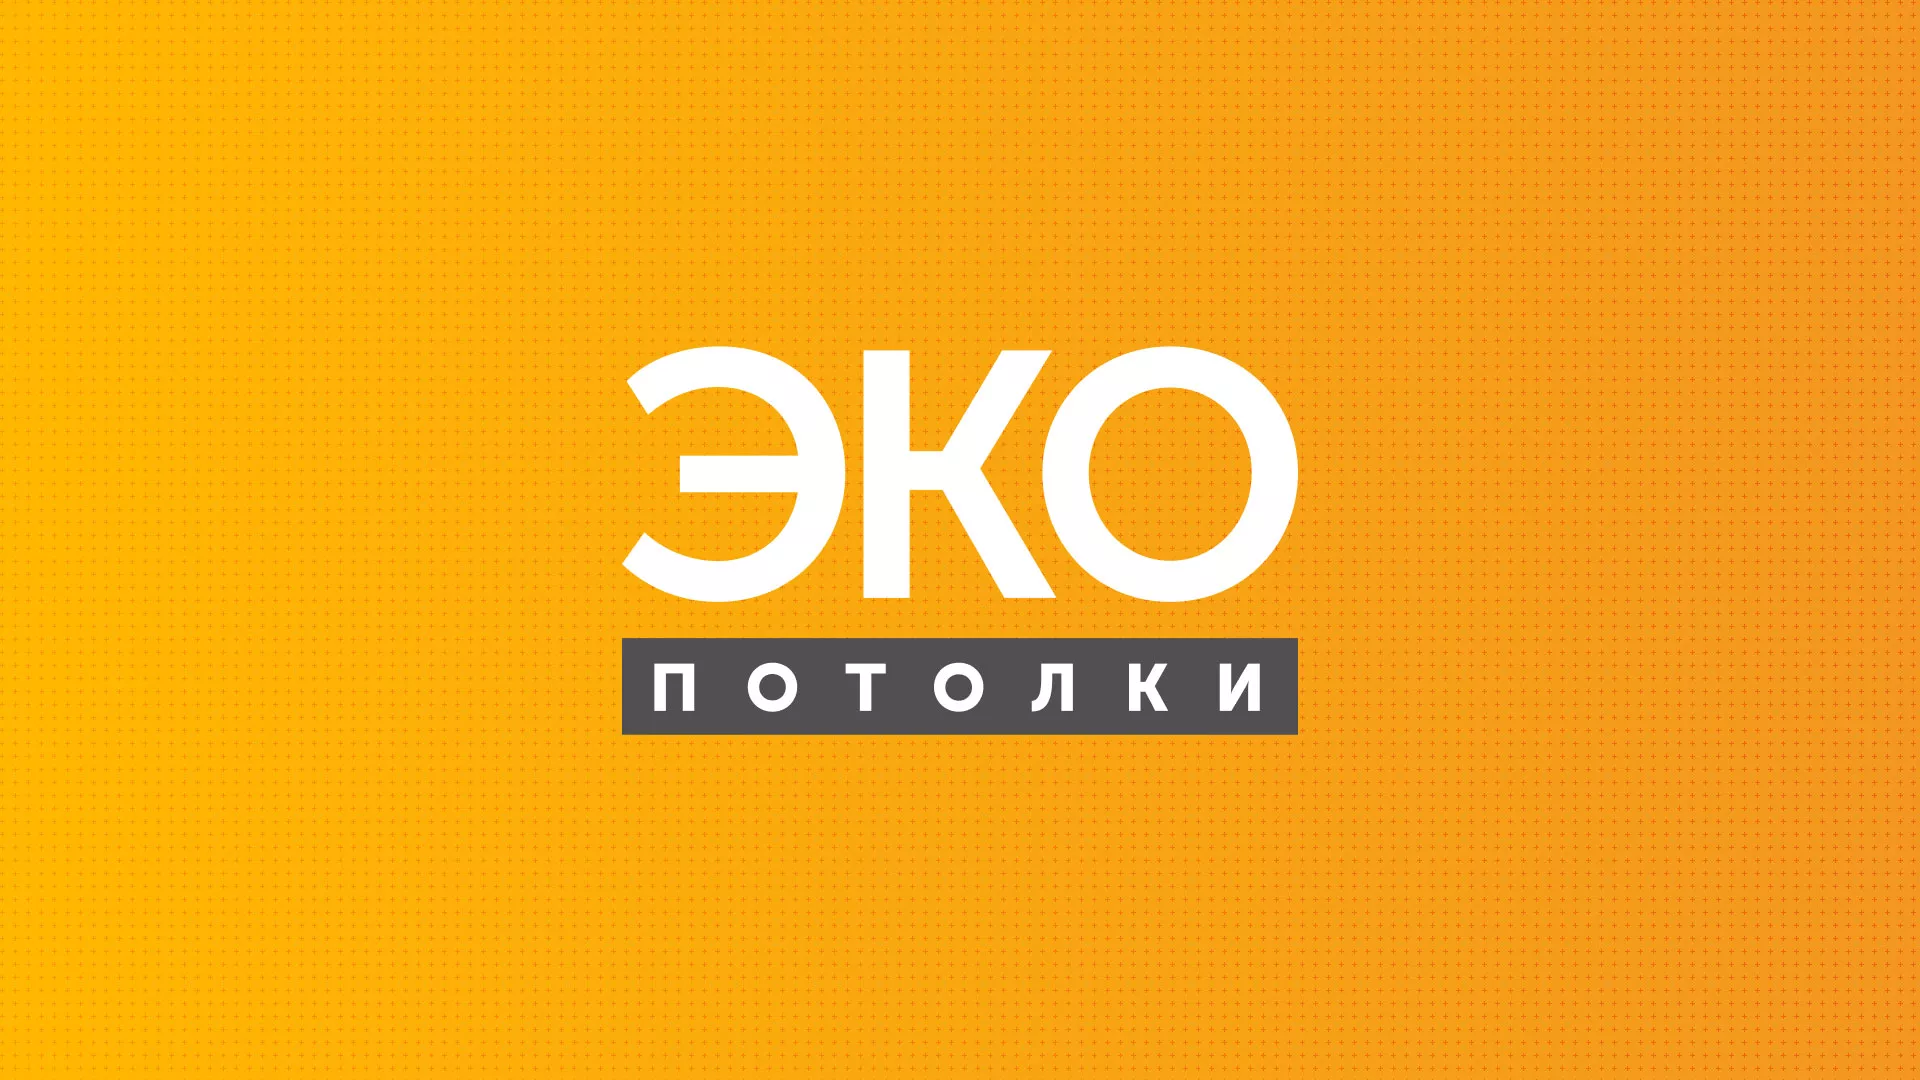 Разработка сайта по натяжным потолкам «Эко Потолки» в Черняховске